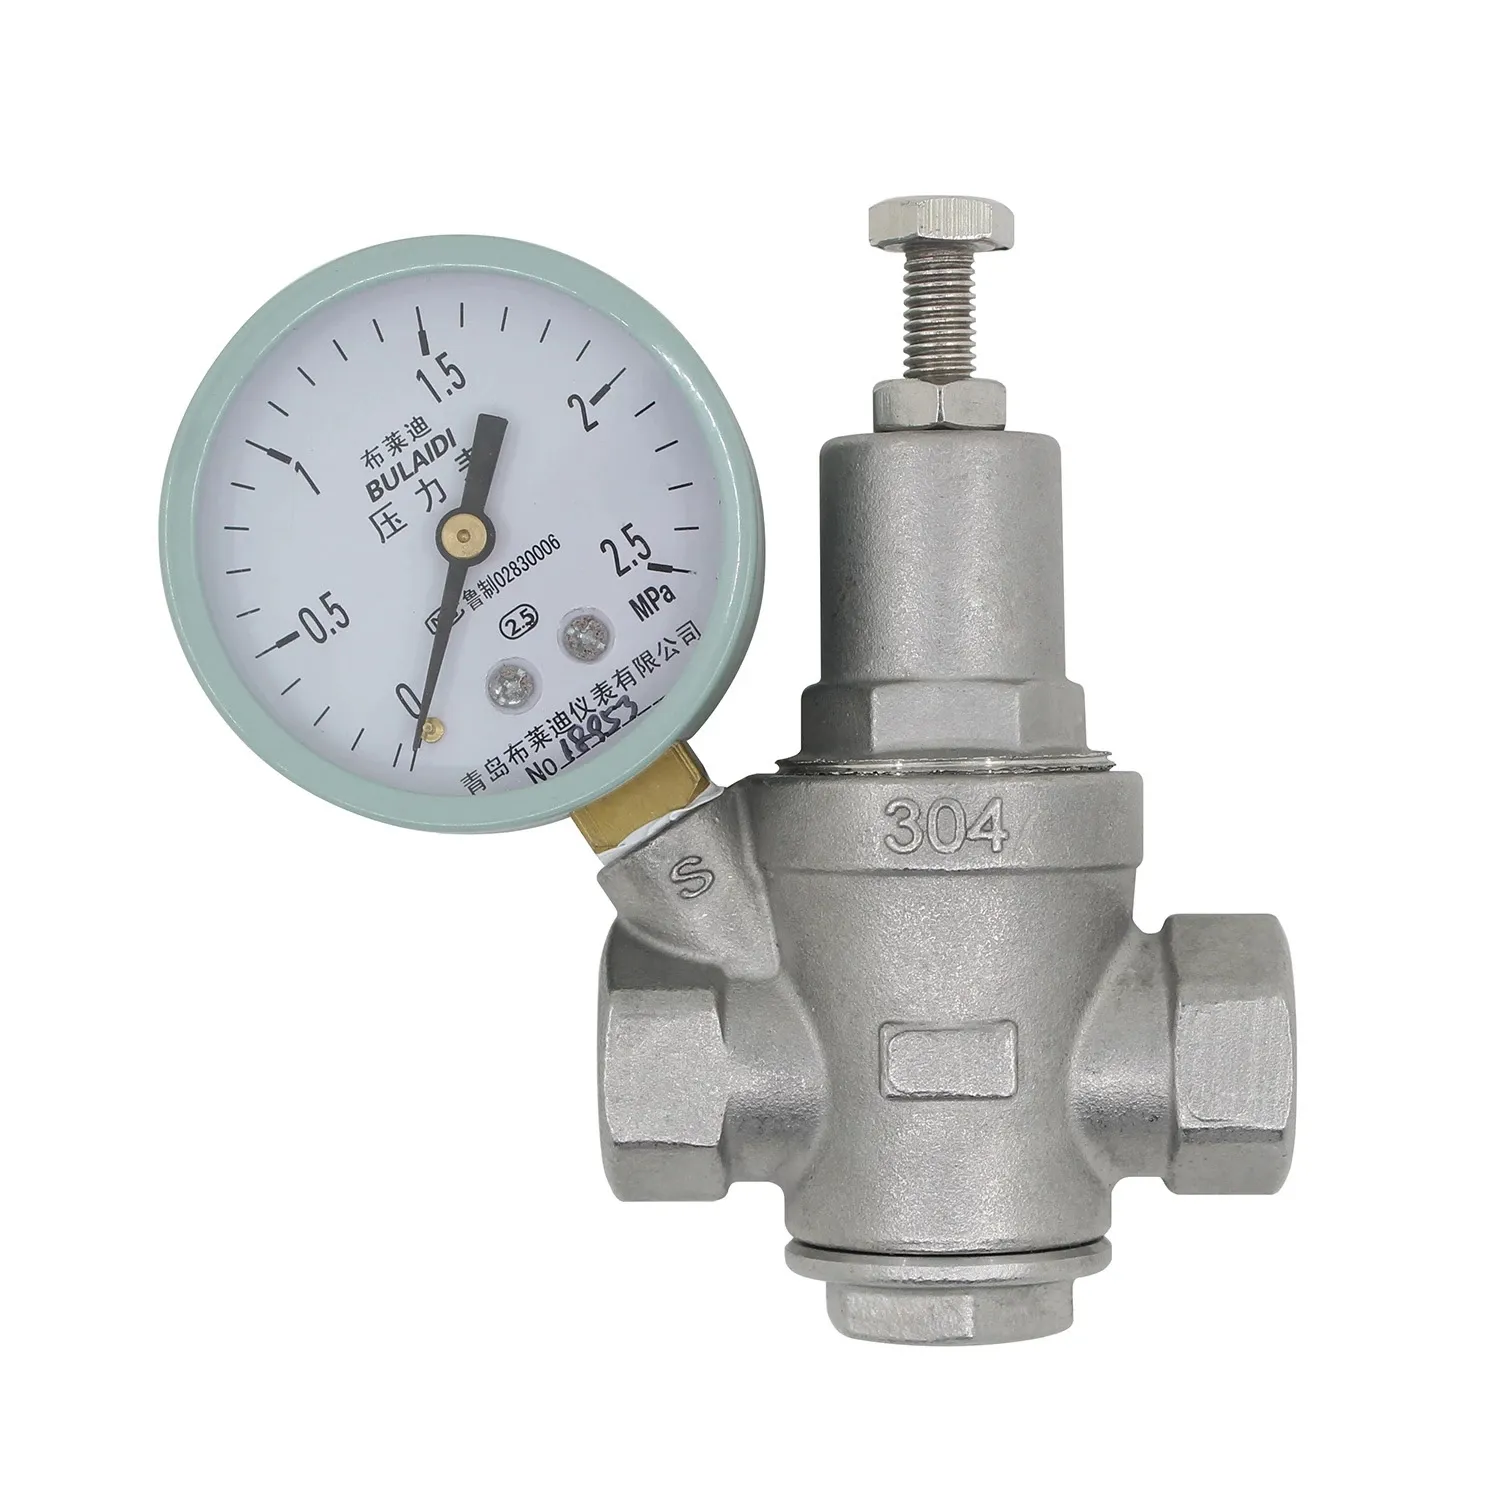 adjustable pressure reducing valve - 1/2 3/4 1 1-1/4 1-1/2 2 inch - lead free stainless steel - water pressure regulator valve